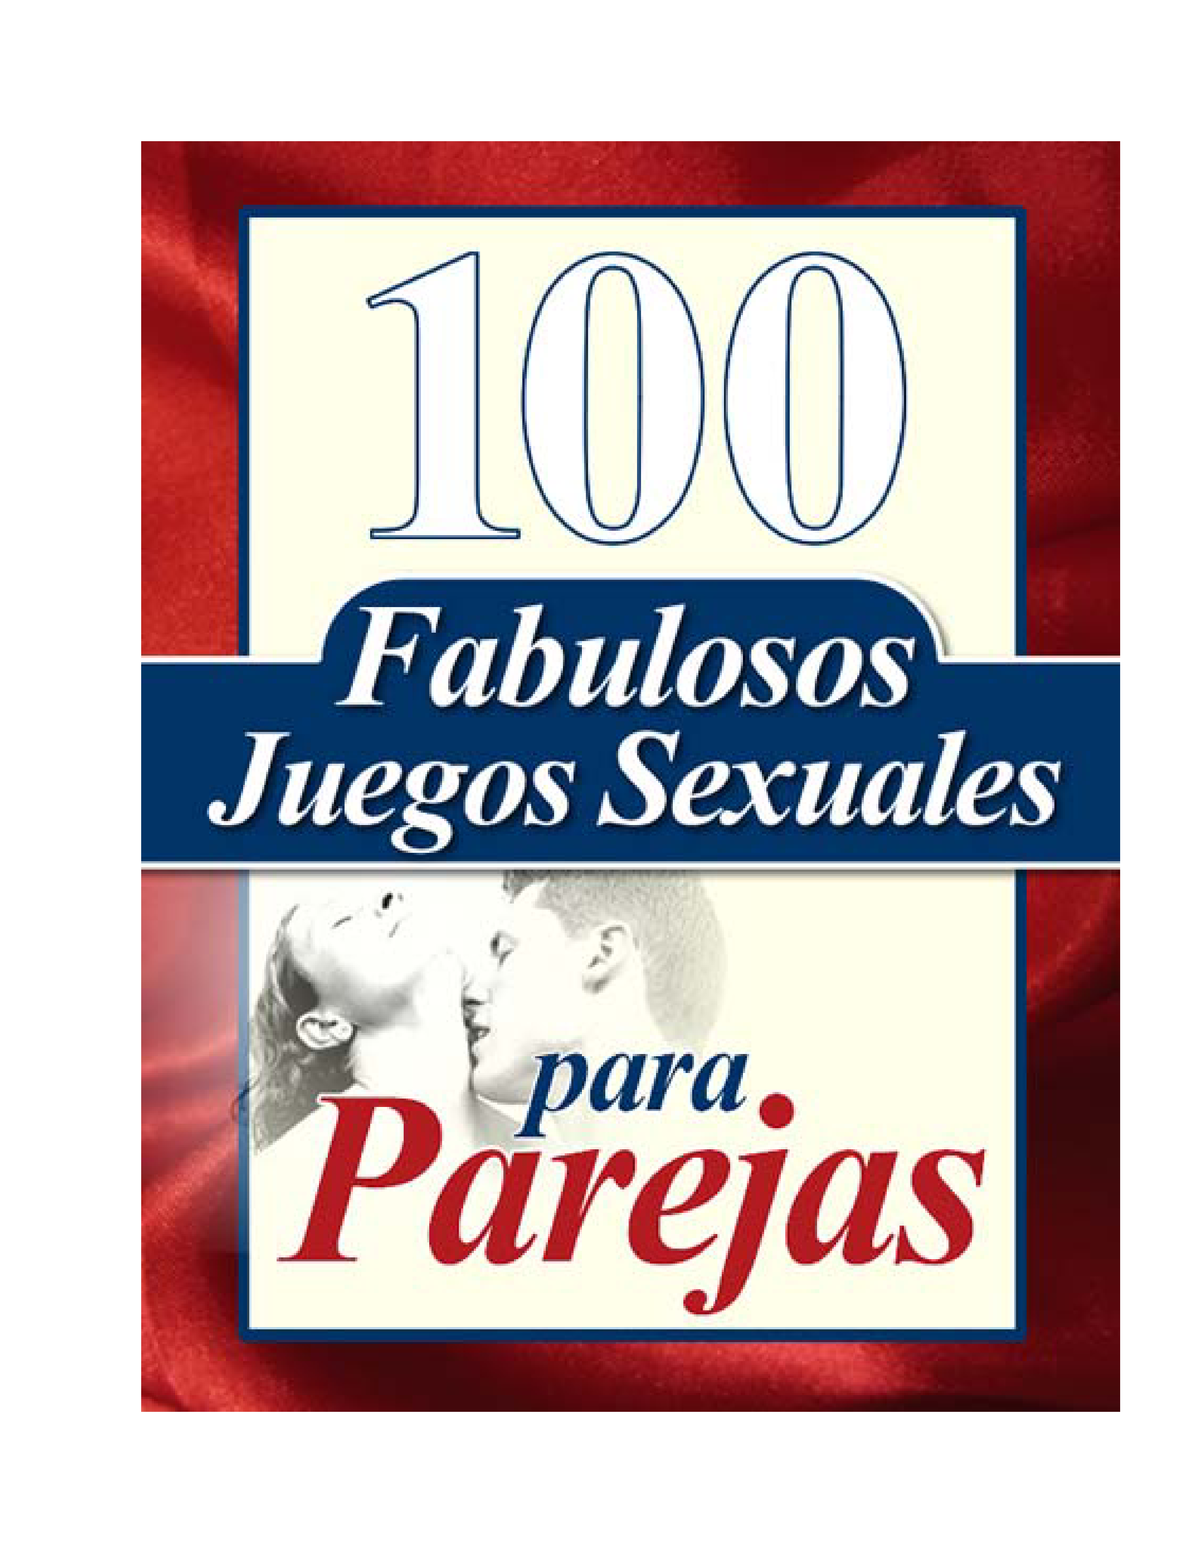 100 Juegos Sexuales Si Si Si Sirve Mucho 100 Fabulosos Juegos Sexuales Para Parejas Por 2249